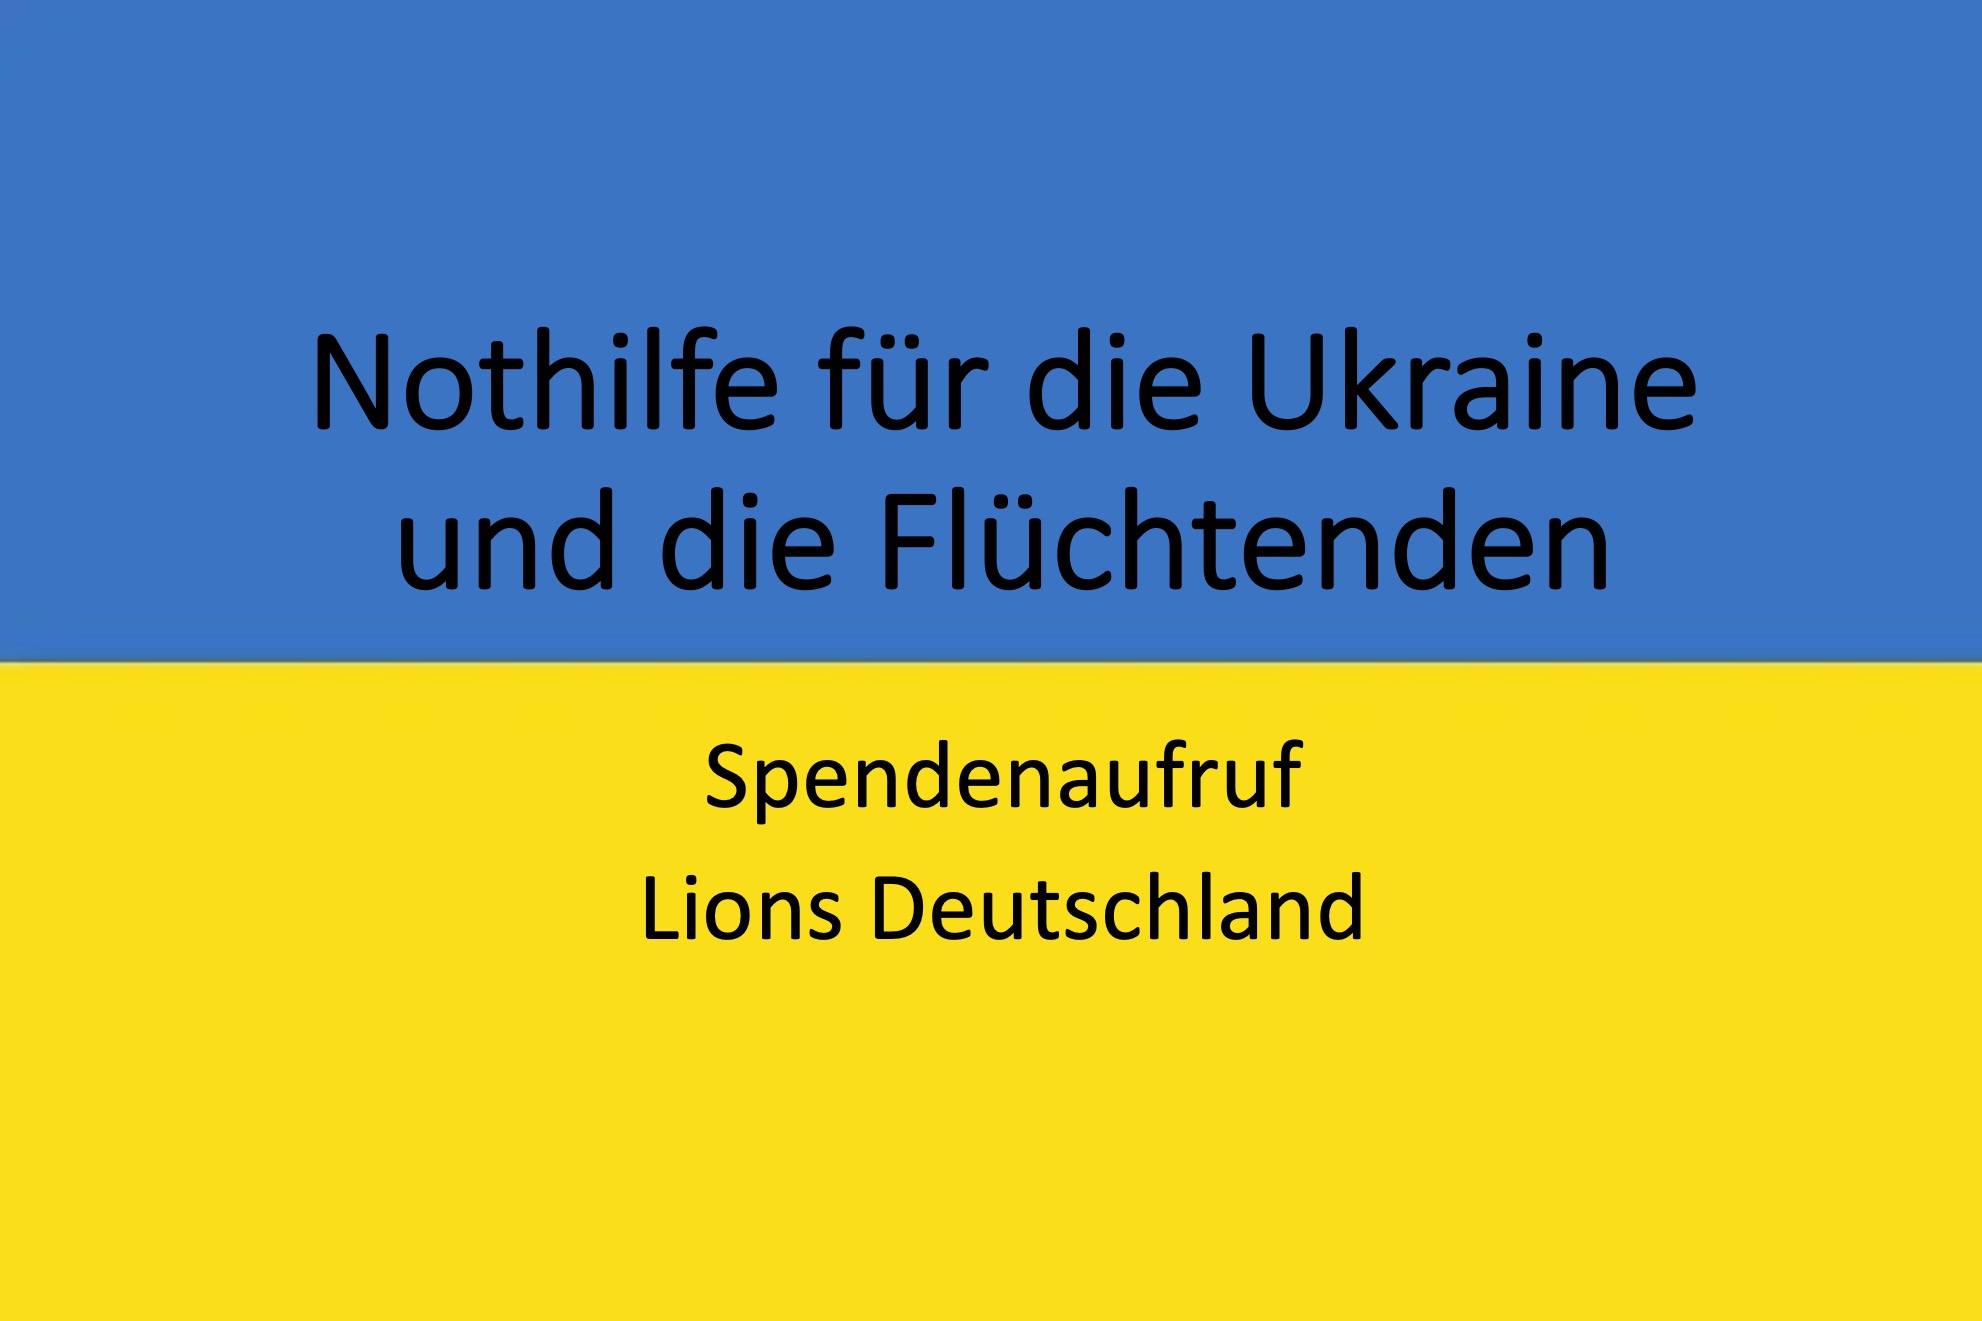 Flagge der Ukraine mit Spendenaufruf